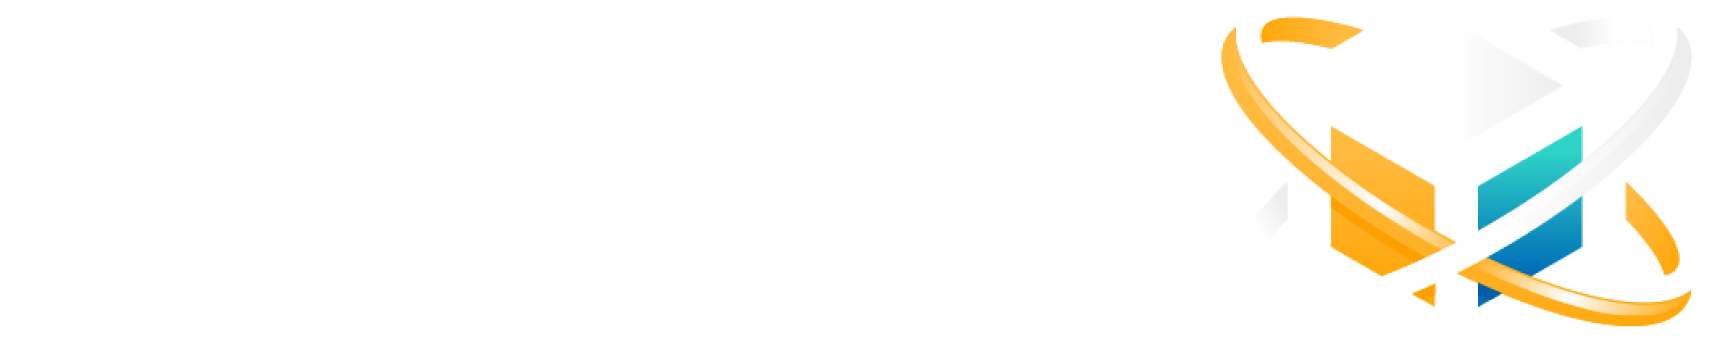 africa blockchain hackathon logo